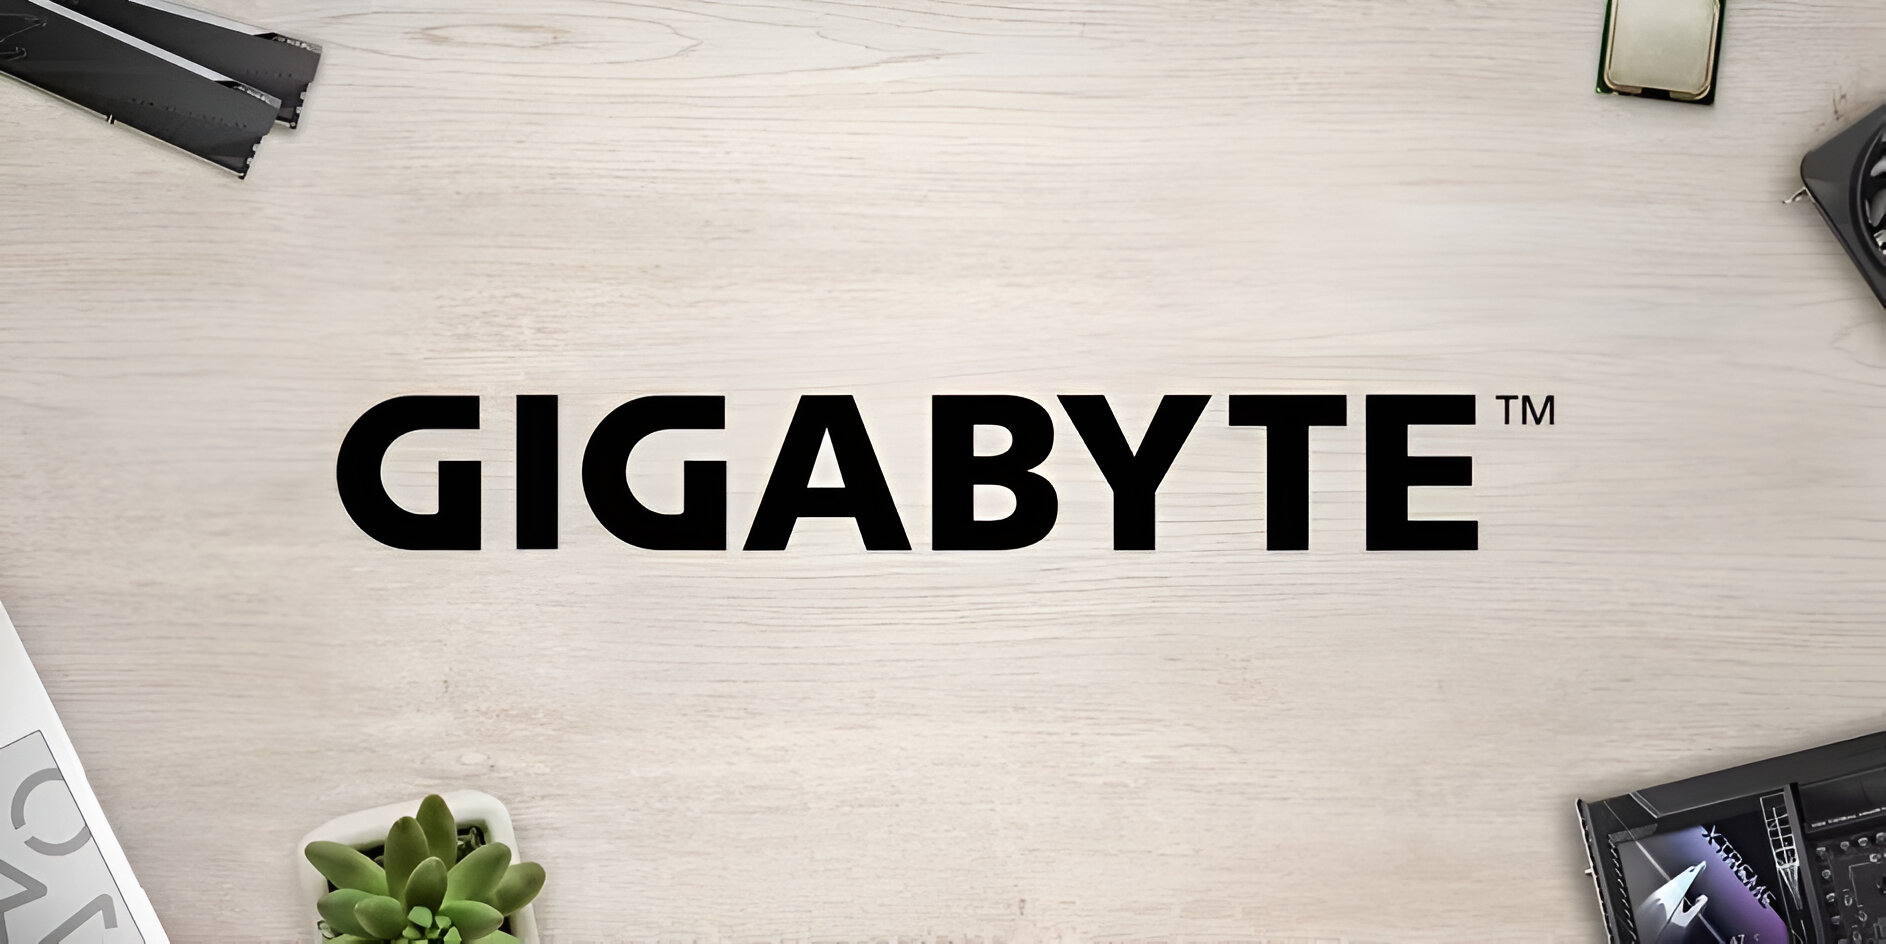 Gigabyte tiết lộ thông tin về mini PC mới